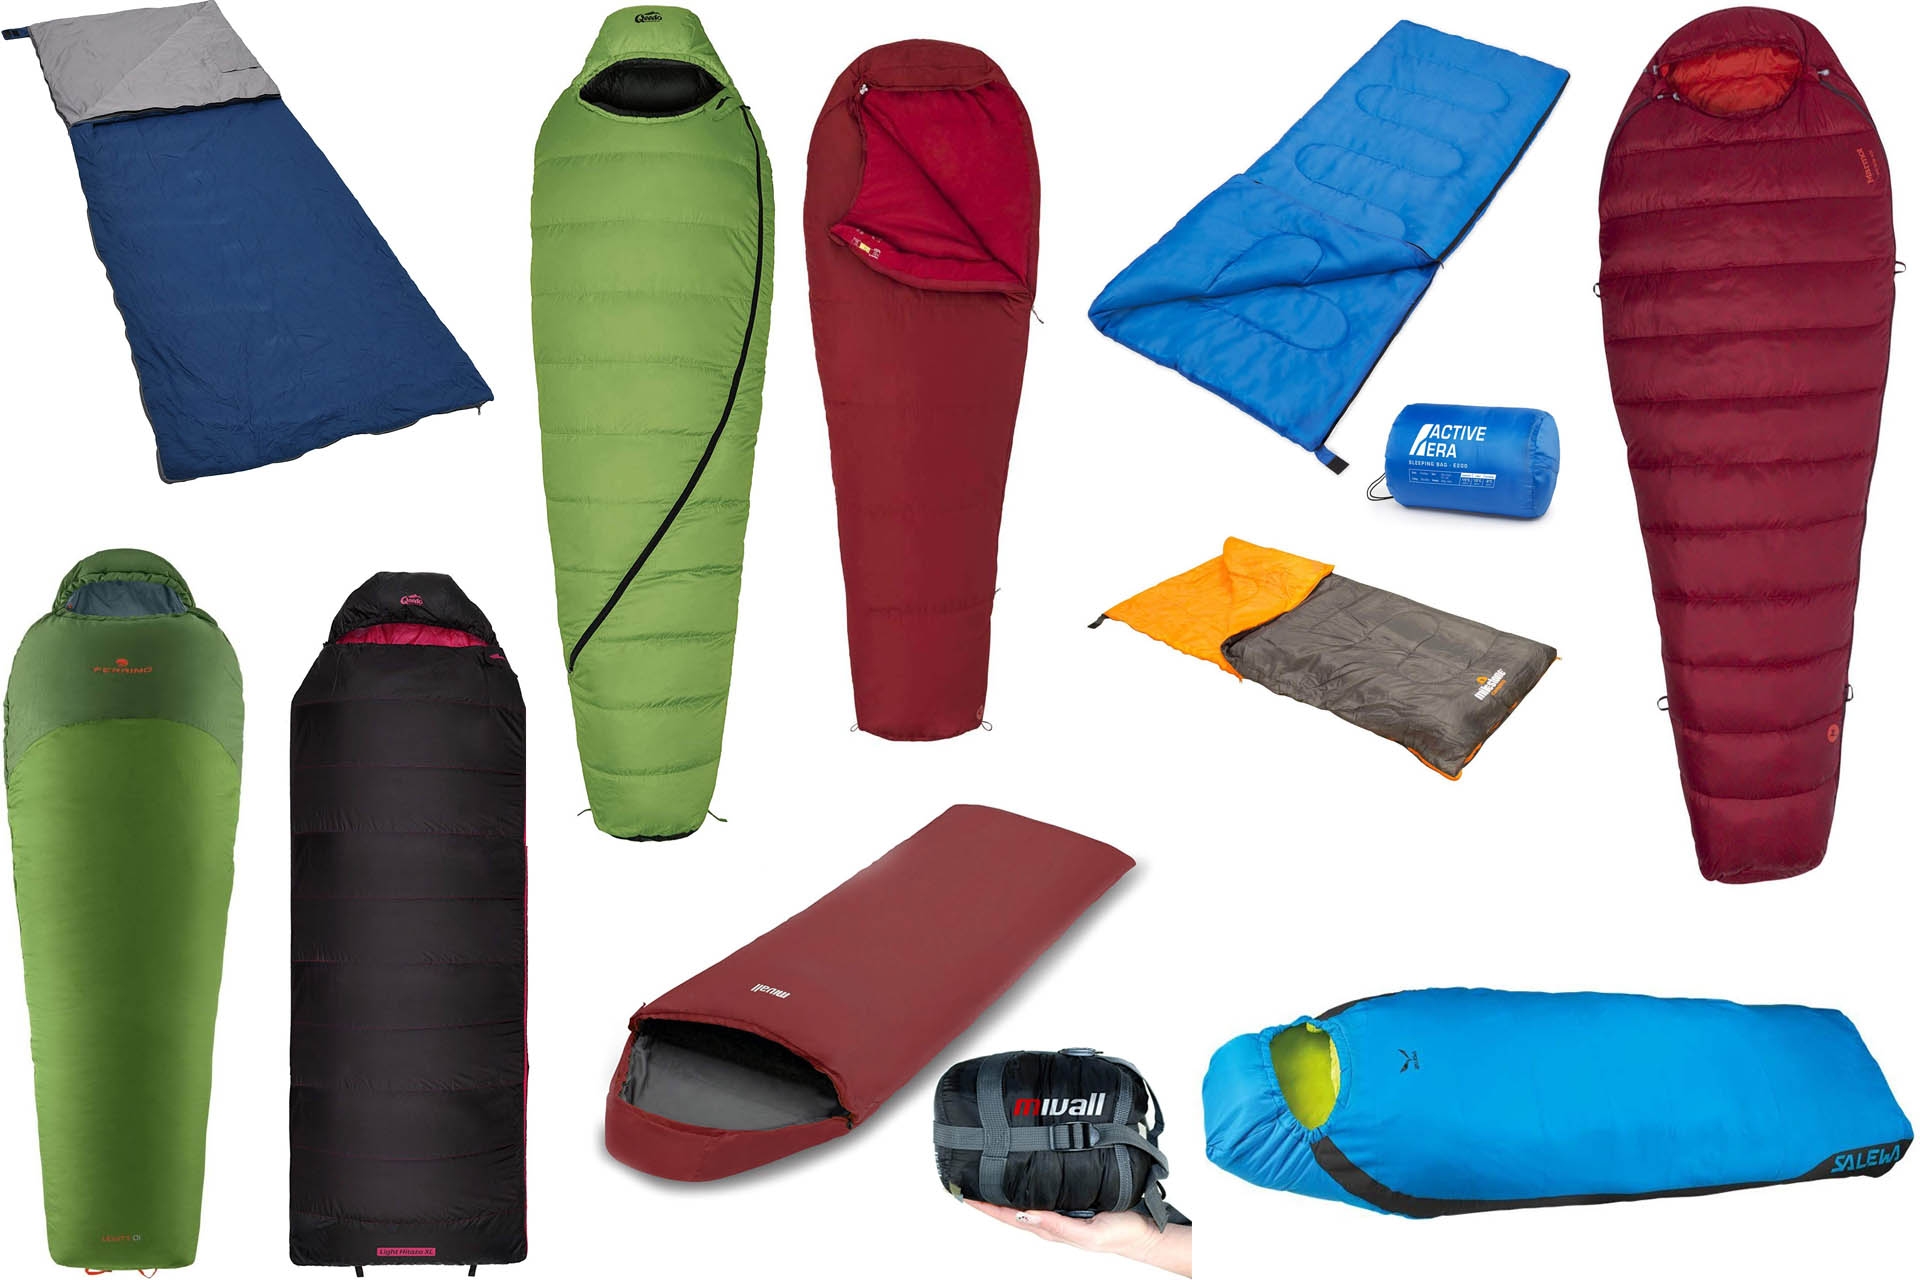 Active Era Ultra Lightweight Sleeping Bag Indoor & Outdoor - Compact,  Ultralight Sleeping Bag for Warm Weather - Camping Sleeping Bags for Warm  Weather, Sleepovers, Fishing, Outdoor Camping and Hiking: Buy Online